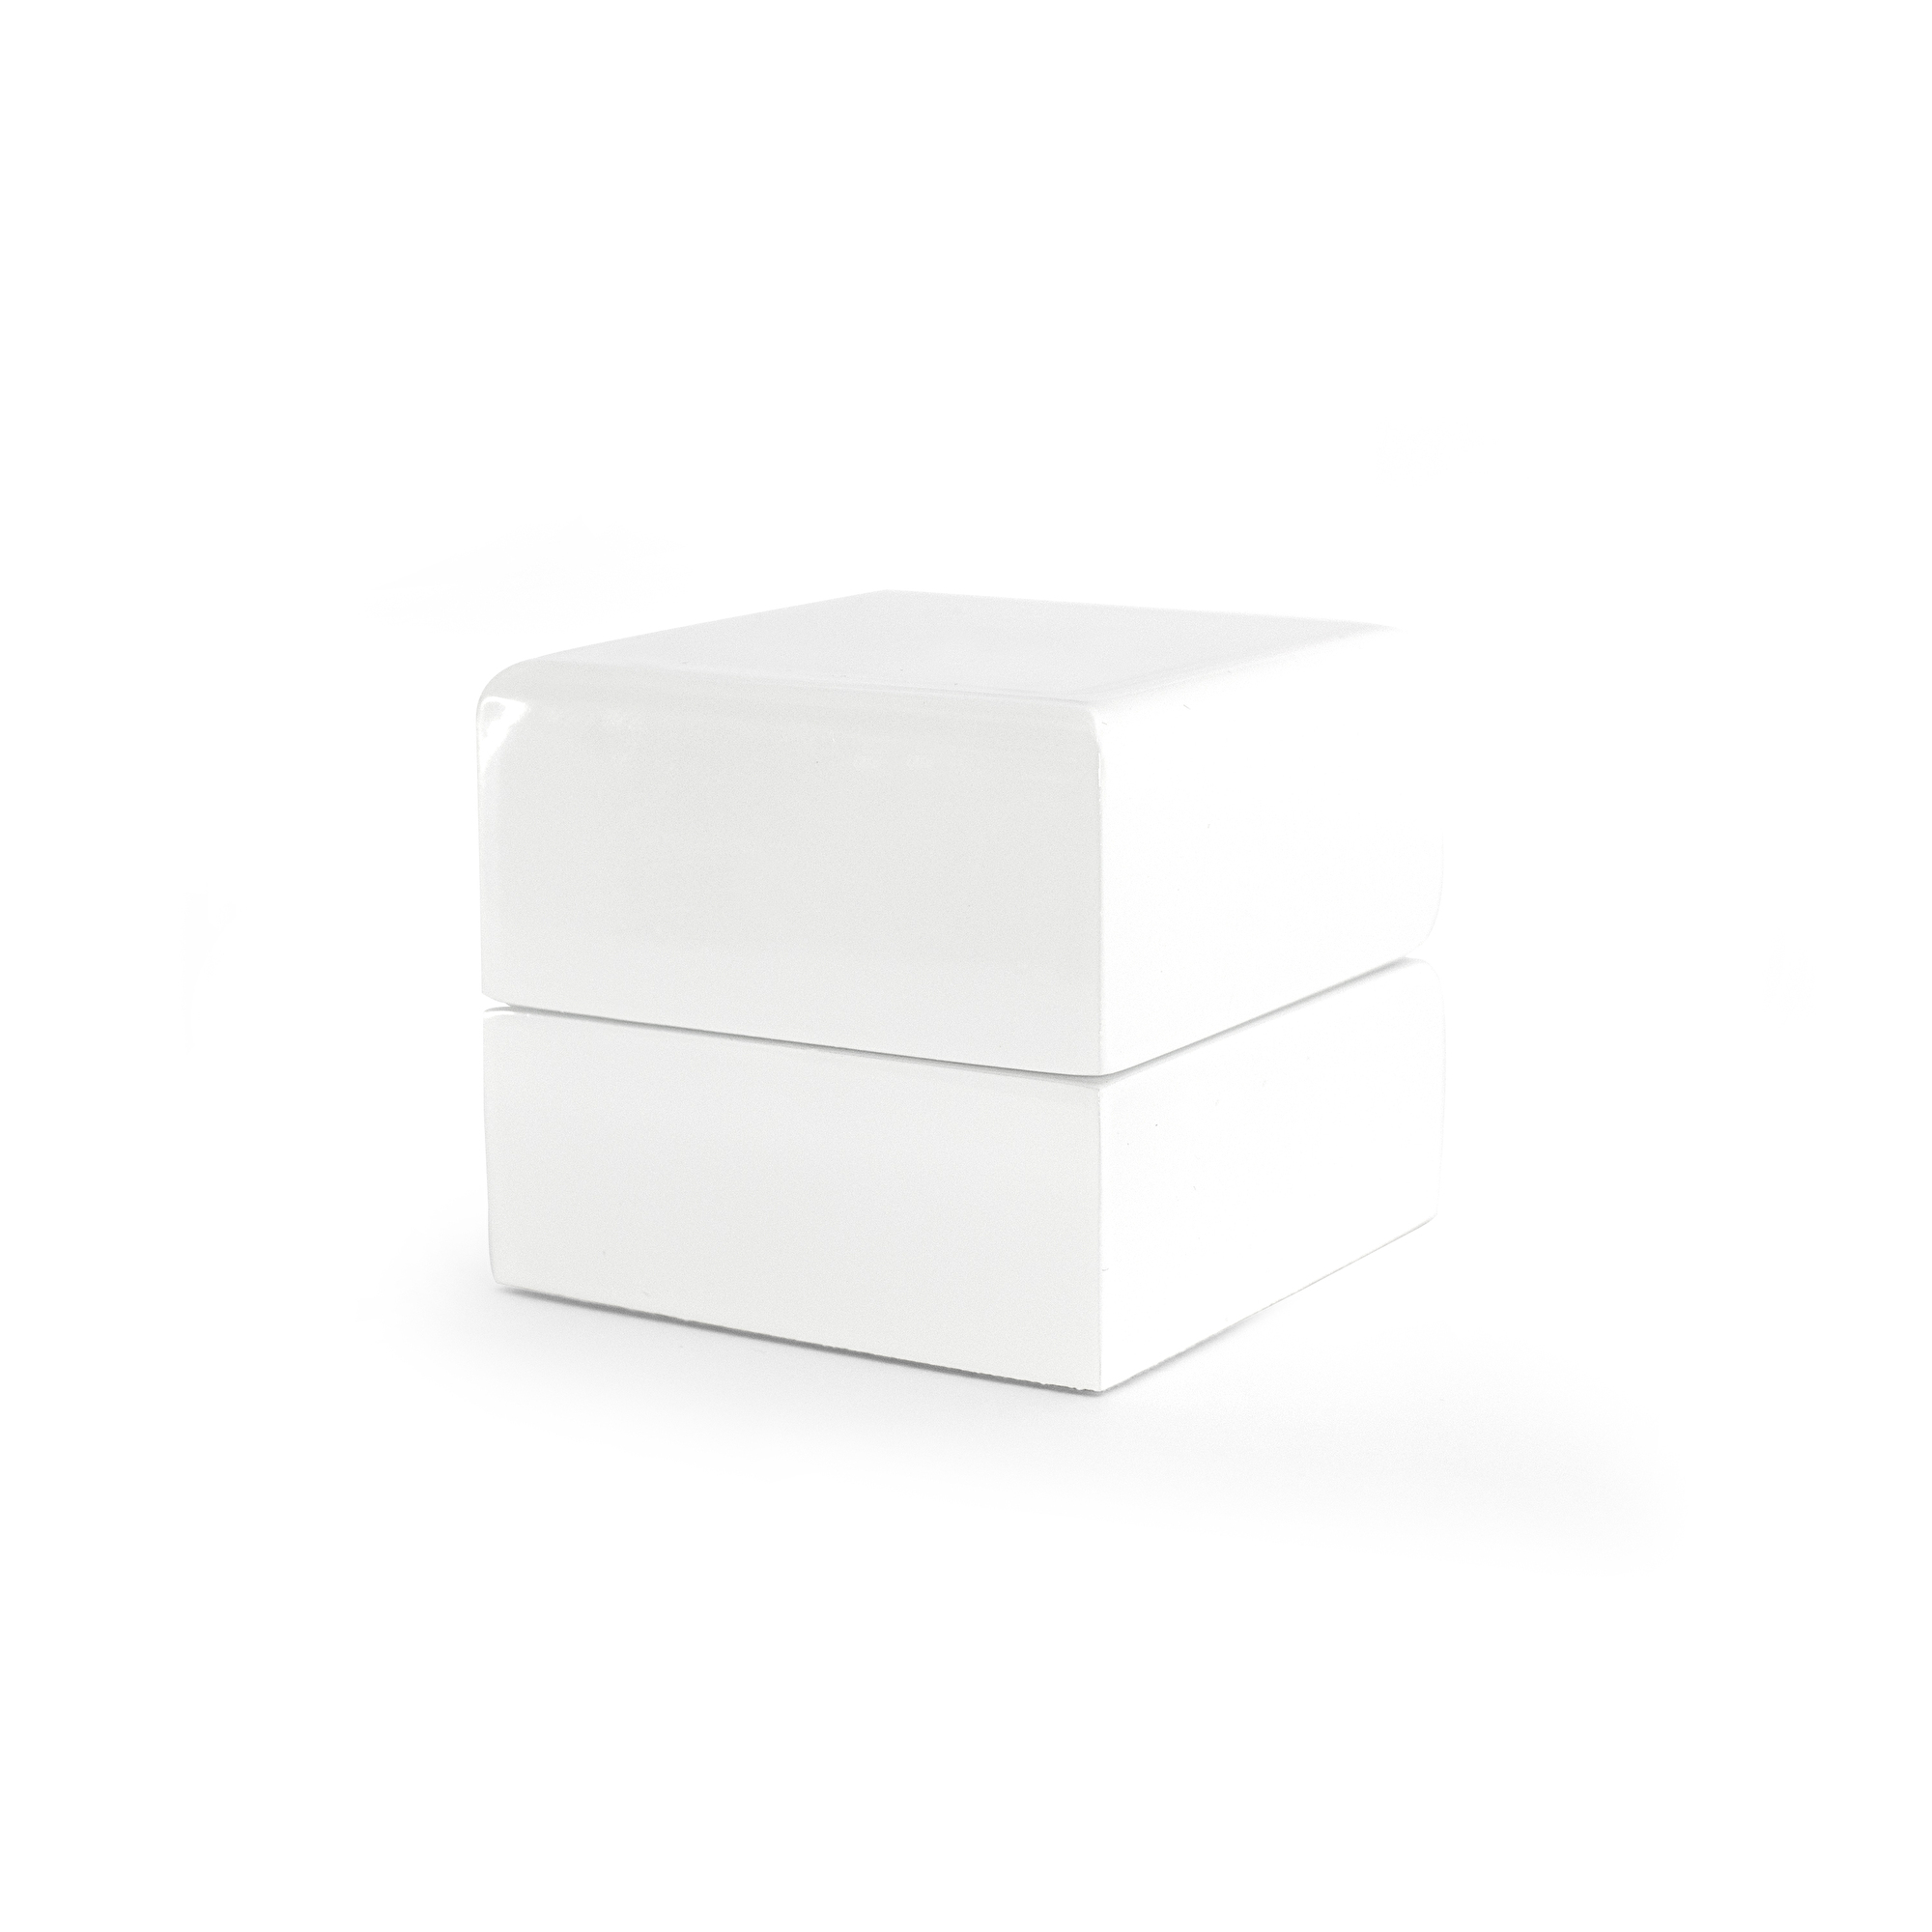 Beneto Bílá dřevěná dárková krabička KD2